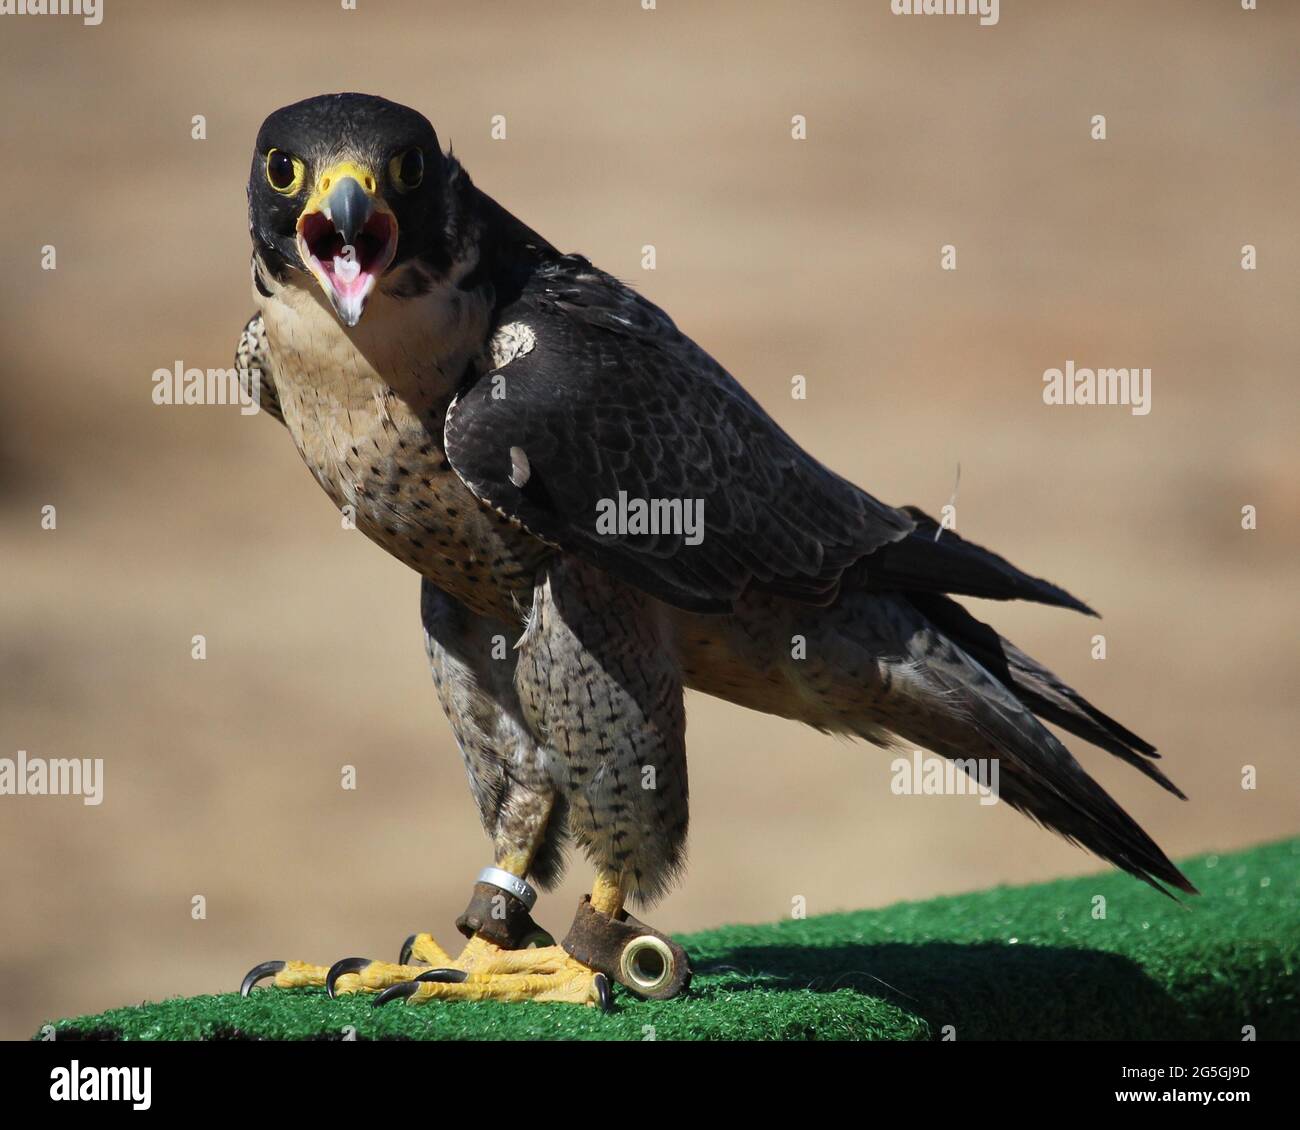 Peregrine Falcon squawking into the camera Stock Photo